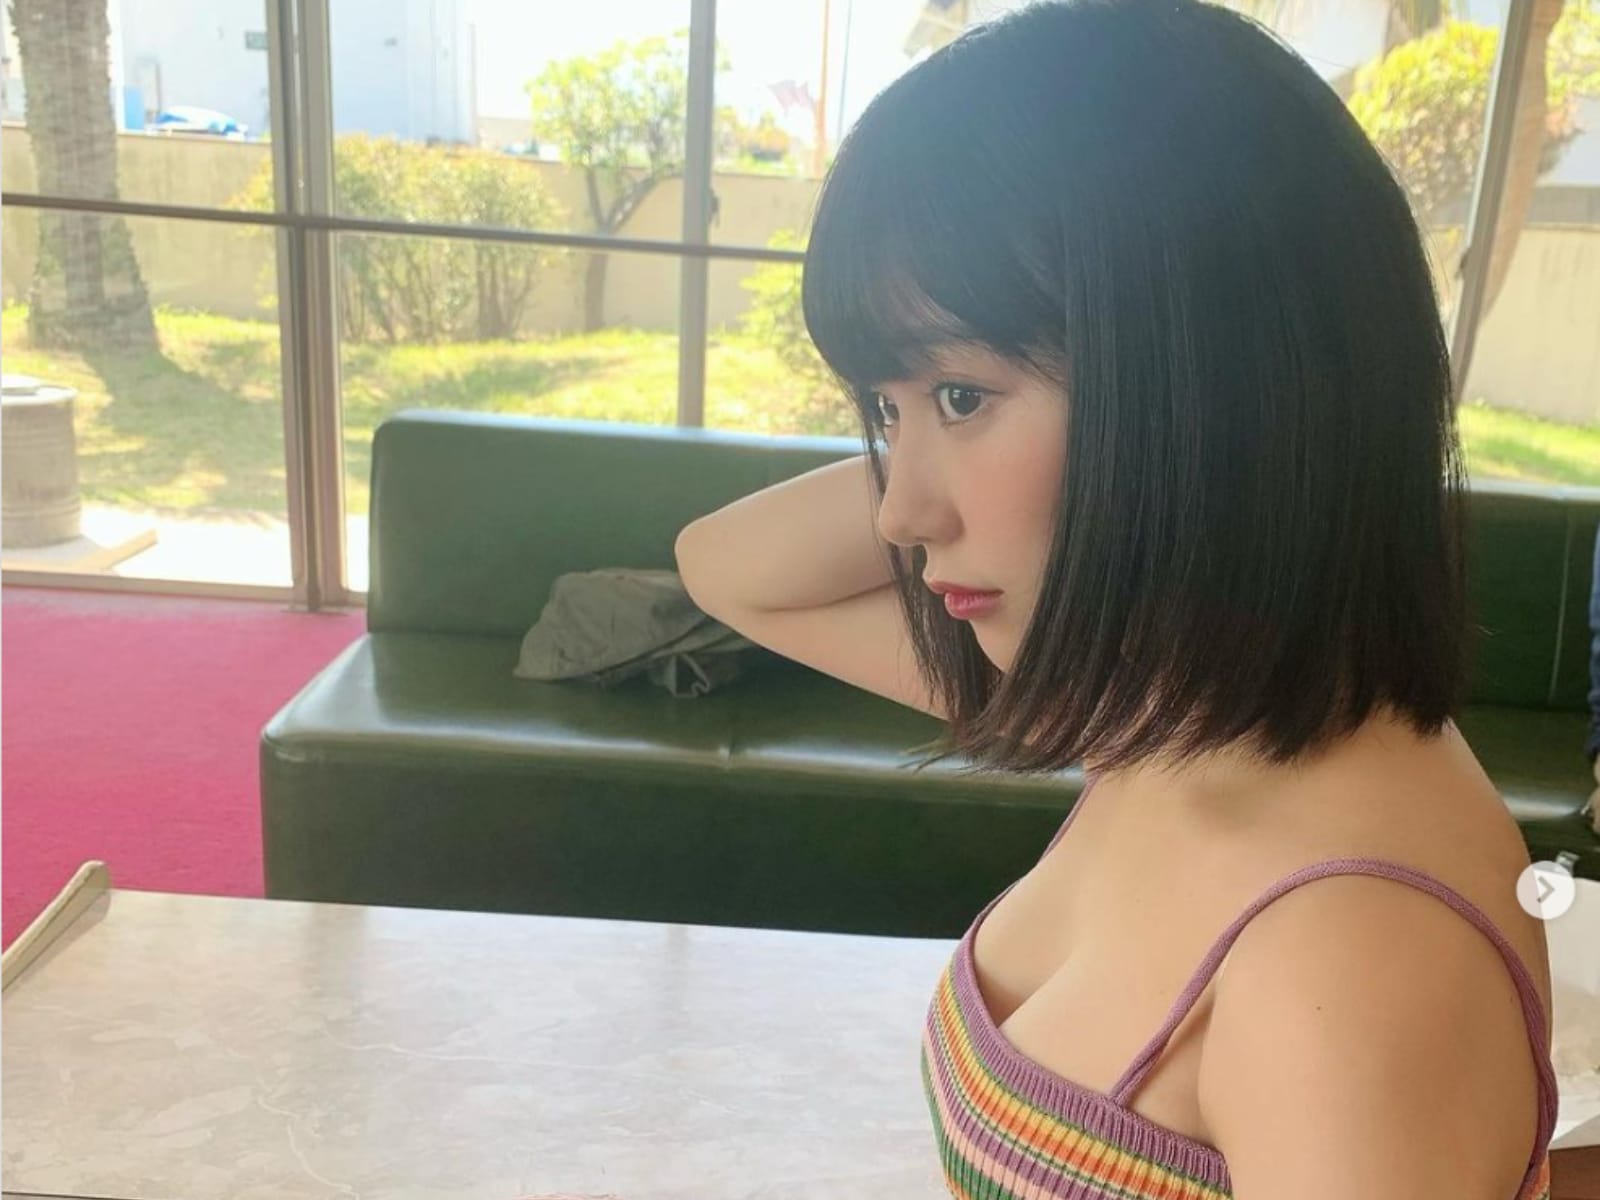 「たまんねえな…」HKT48・田中美久、谷間チラリなキャミ姿を披露！「エチエチすぎ」「艶っぽい」